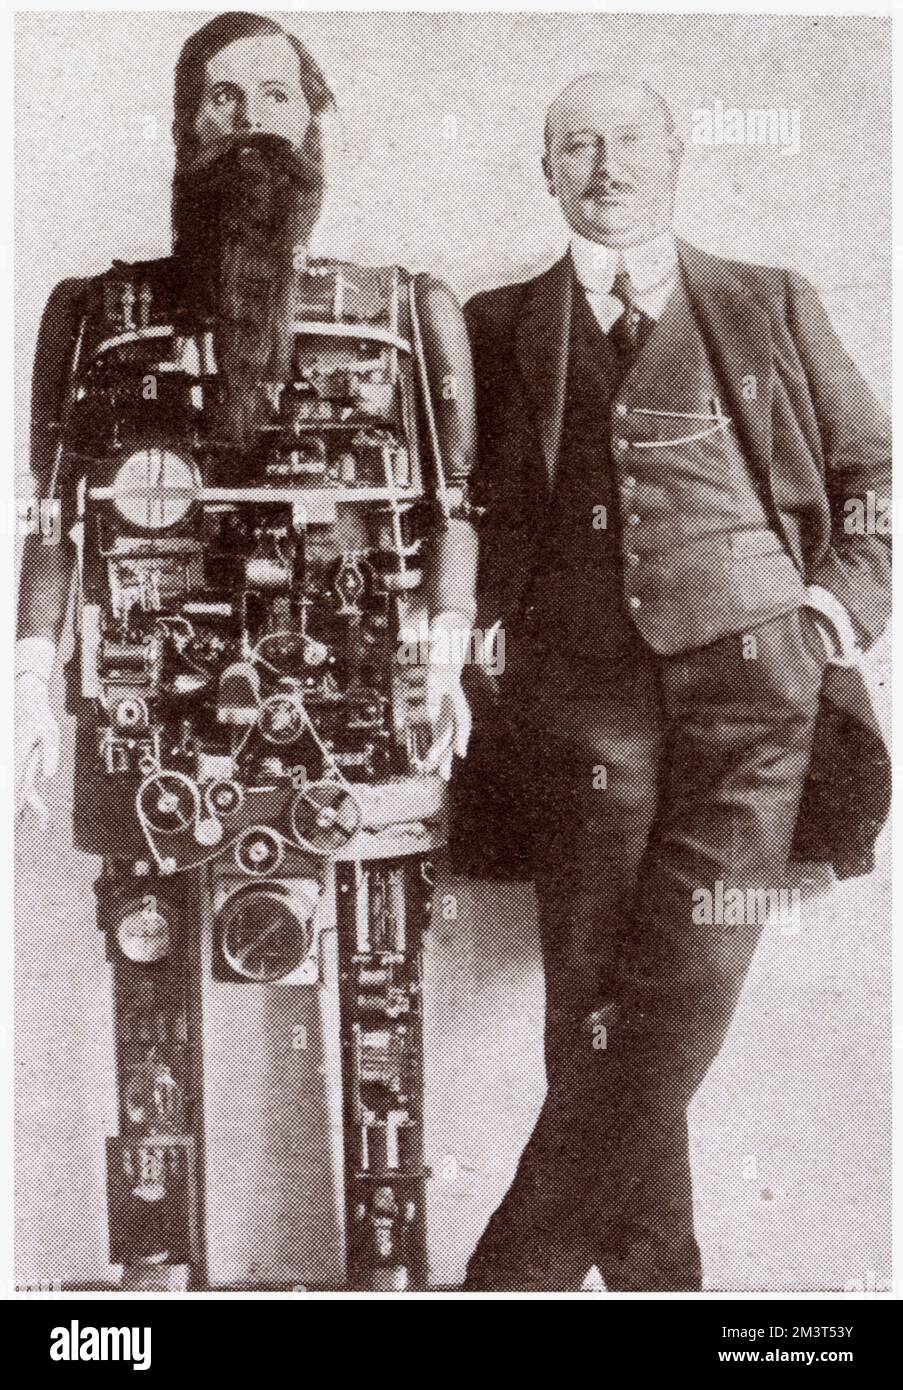 L'inventeur de Berlin Herr Widmann avec son horloger mécanique qui imite les mouvements humains, il pouvait chanter, rire et siffler. Banque D'Images